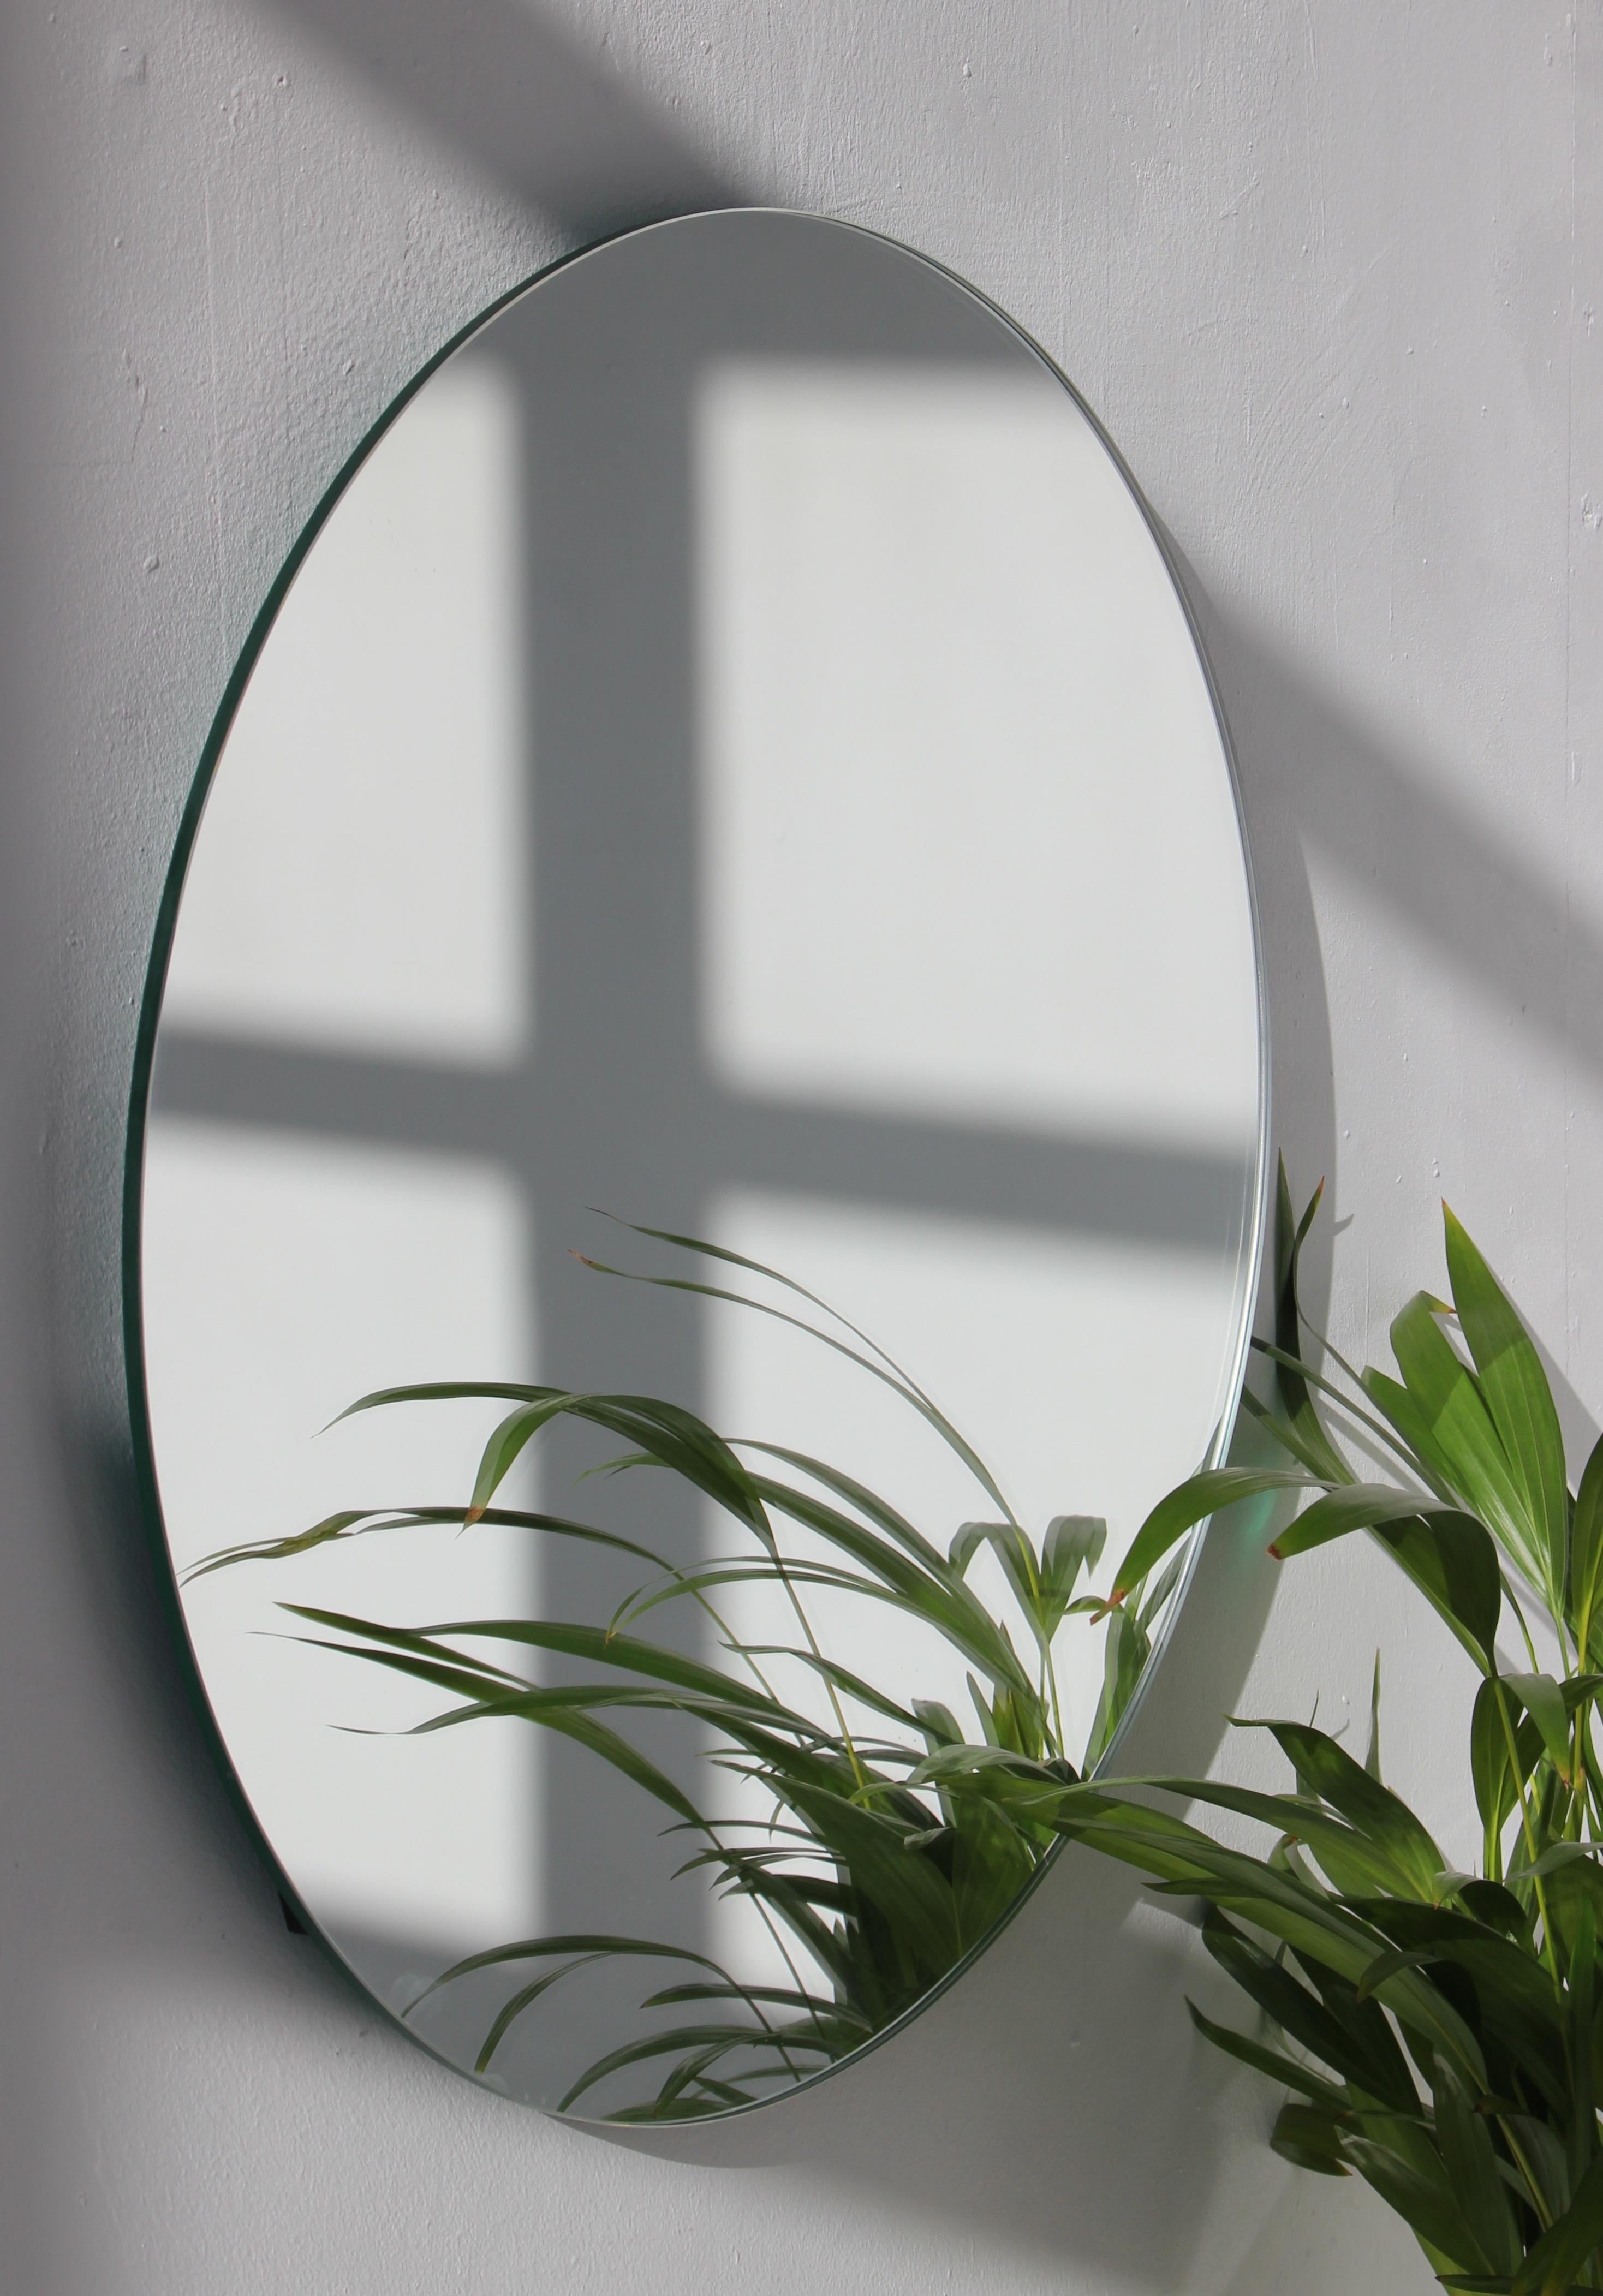 Charmanter und minimalistischer runder rahmenloser Spiegel mit Schwebeeffekt. Hochwertiges Design, das dafür sorgt, dass der Spiegel perfekt parallel zur Wand steht. Entworfen und hergestellt in London, UK.

Ausgestattet mit professionellen Platten,